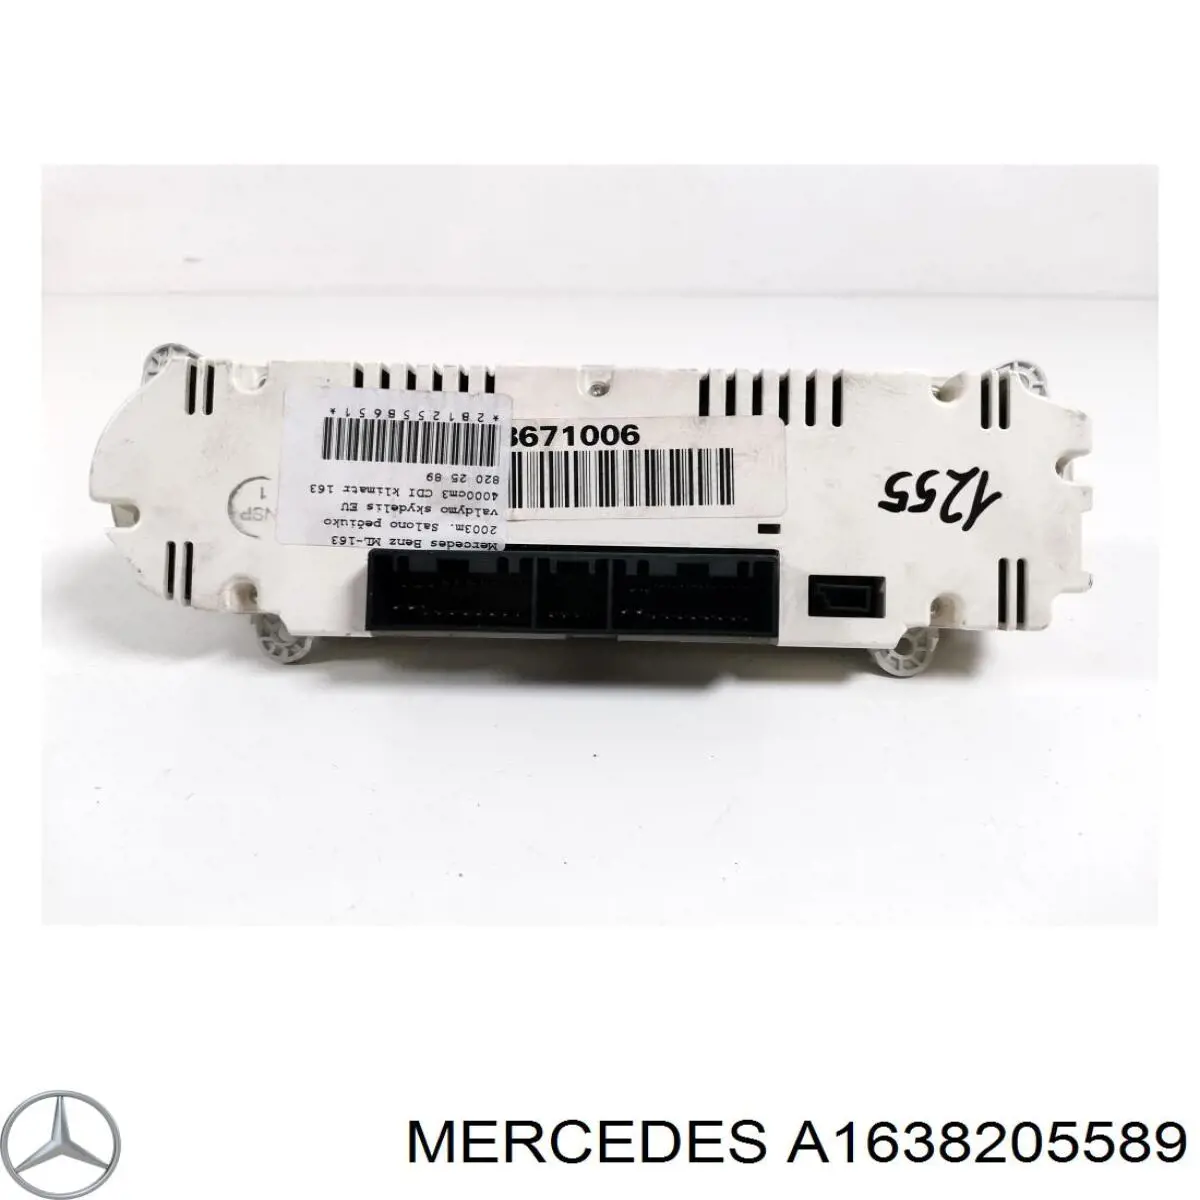 A1638205589 Mercedes блок управления режимами отопления/кондиционирования